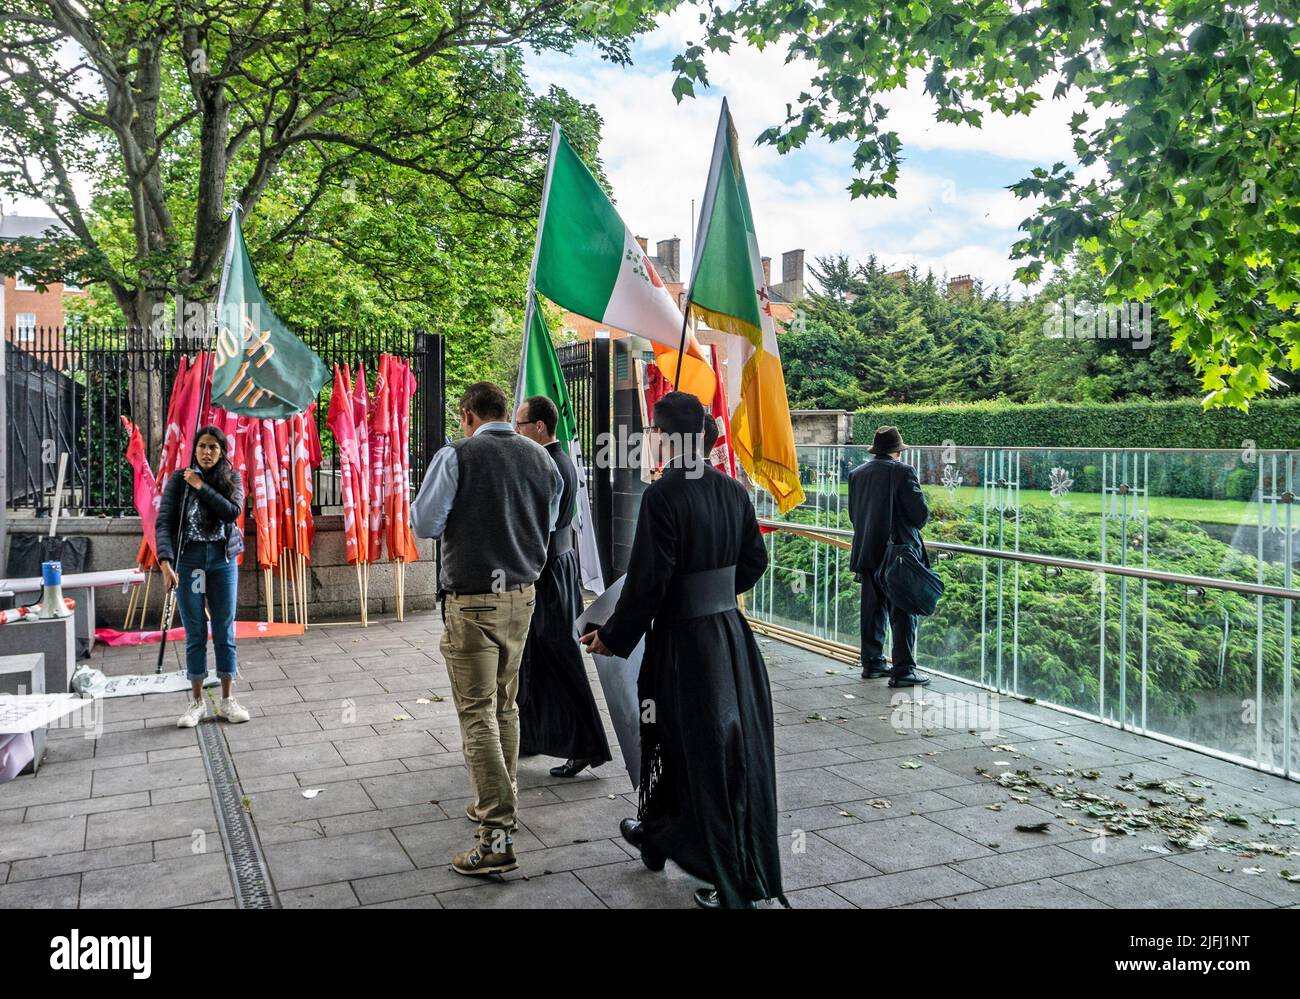 Eine Gruppe, die sich auf eine Pro-Life-Kundgebung auf dem Parnell Square in Dublin, Irland, vorbereitet. Die Gruppe umfasst Priester/Studentenpriester, Stockfoto